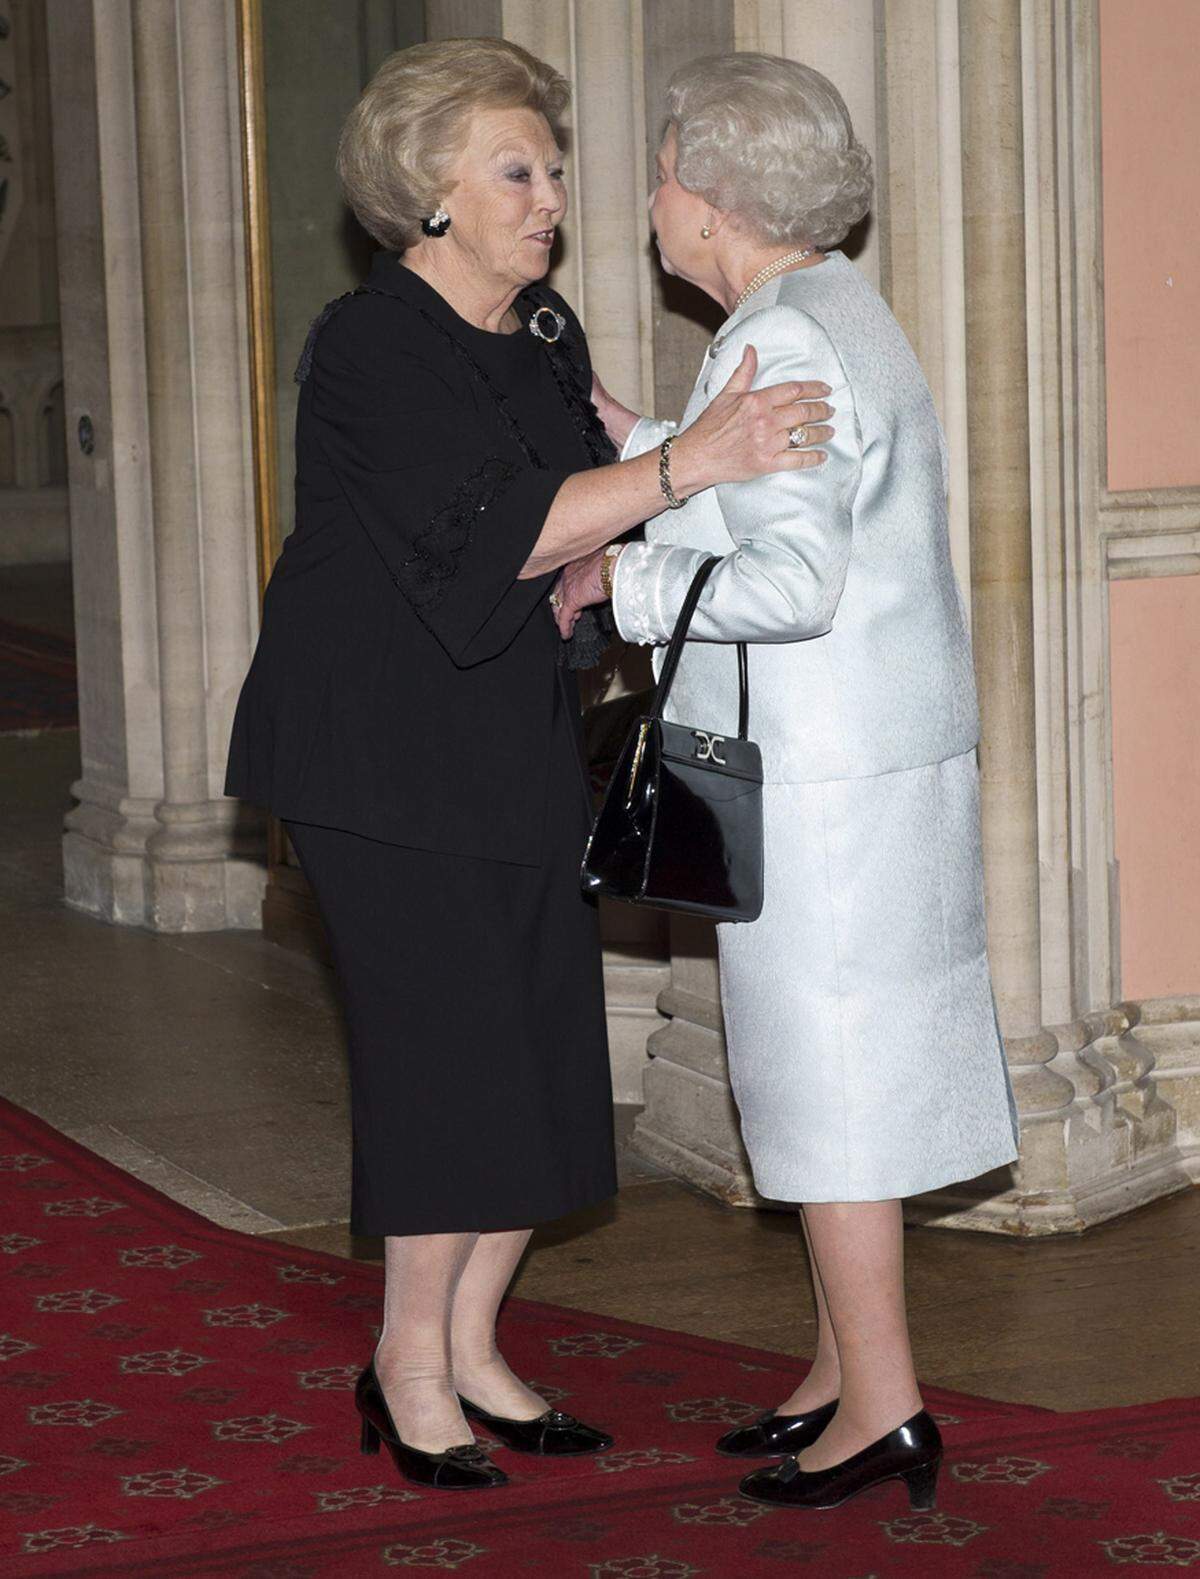 Königin Beatrix der Niederlande begrüßte die Queen gleich mit einer Umarmung und Küsschen auf die Wange.